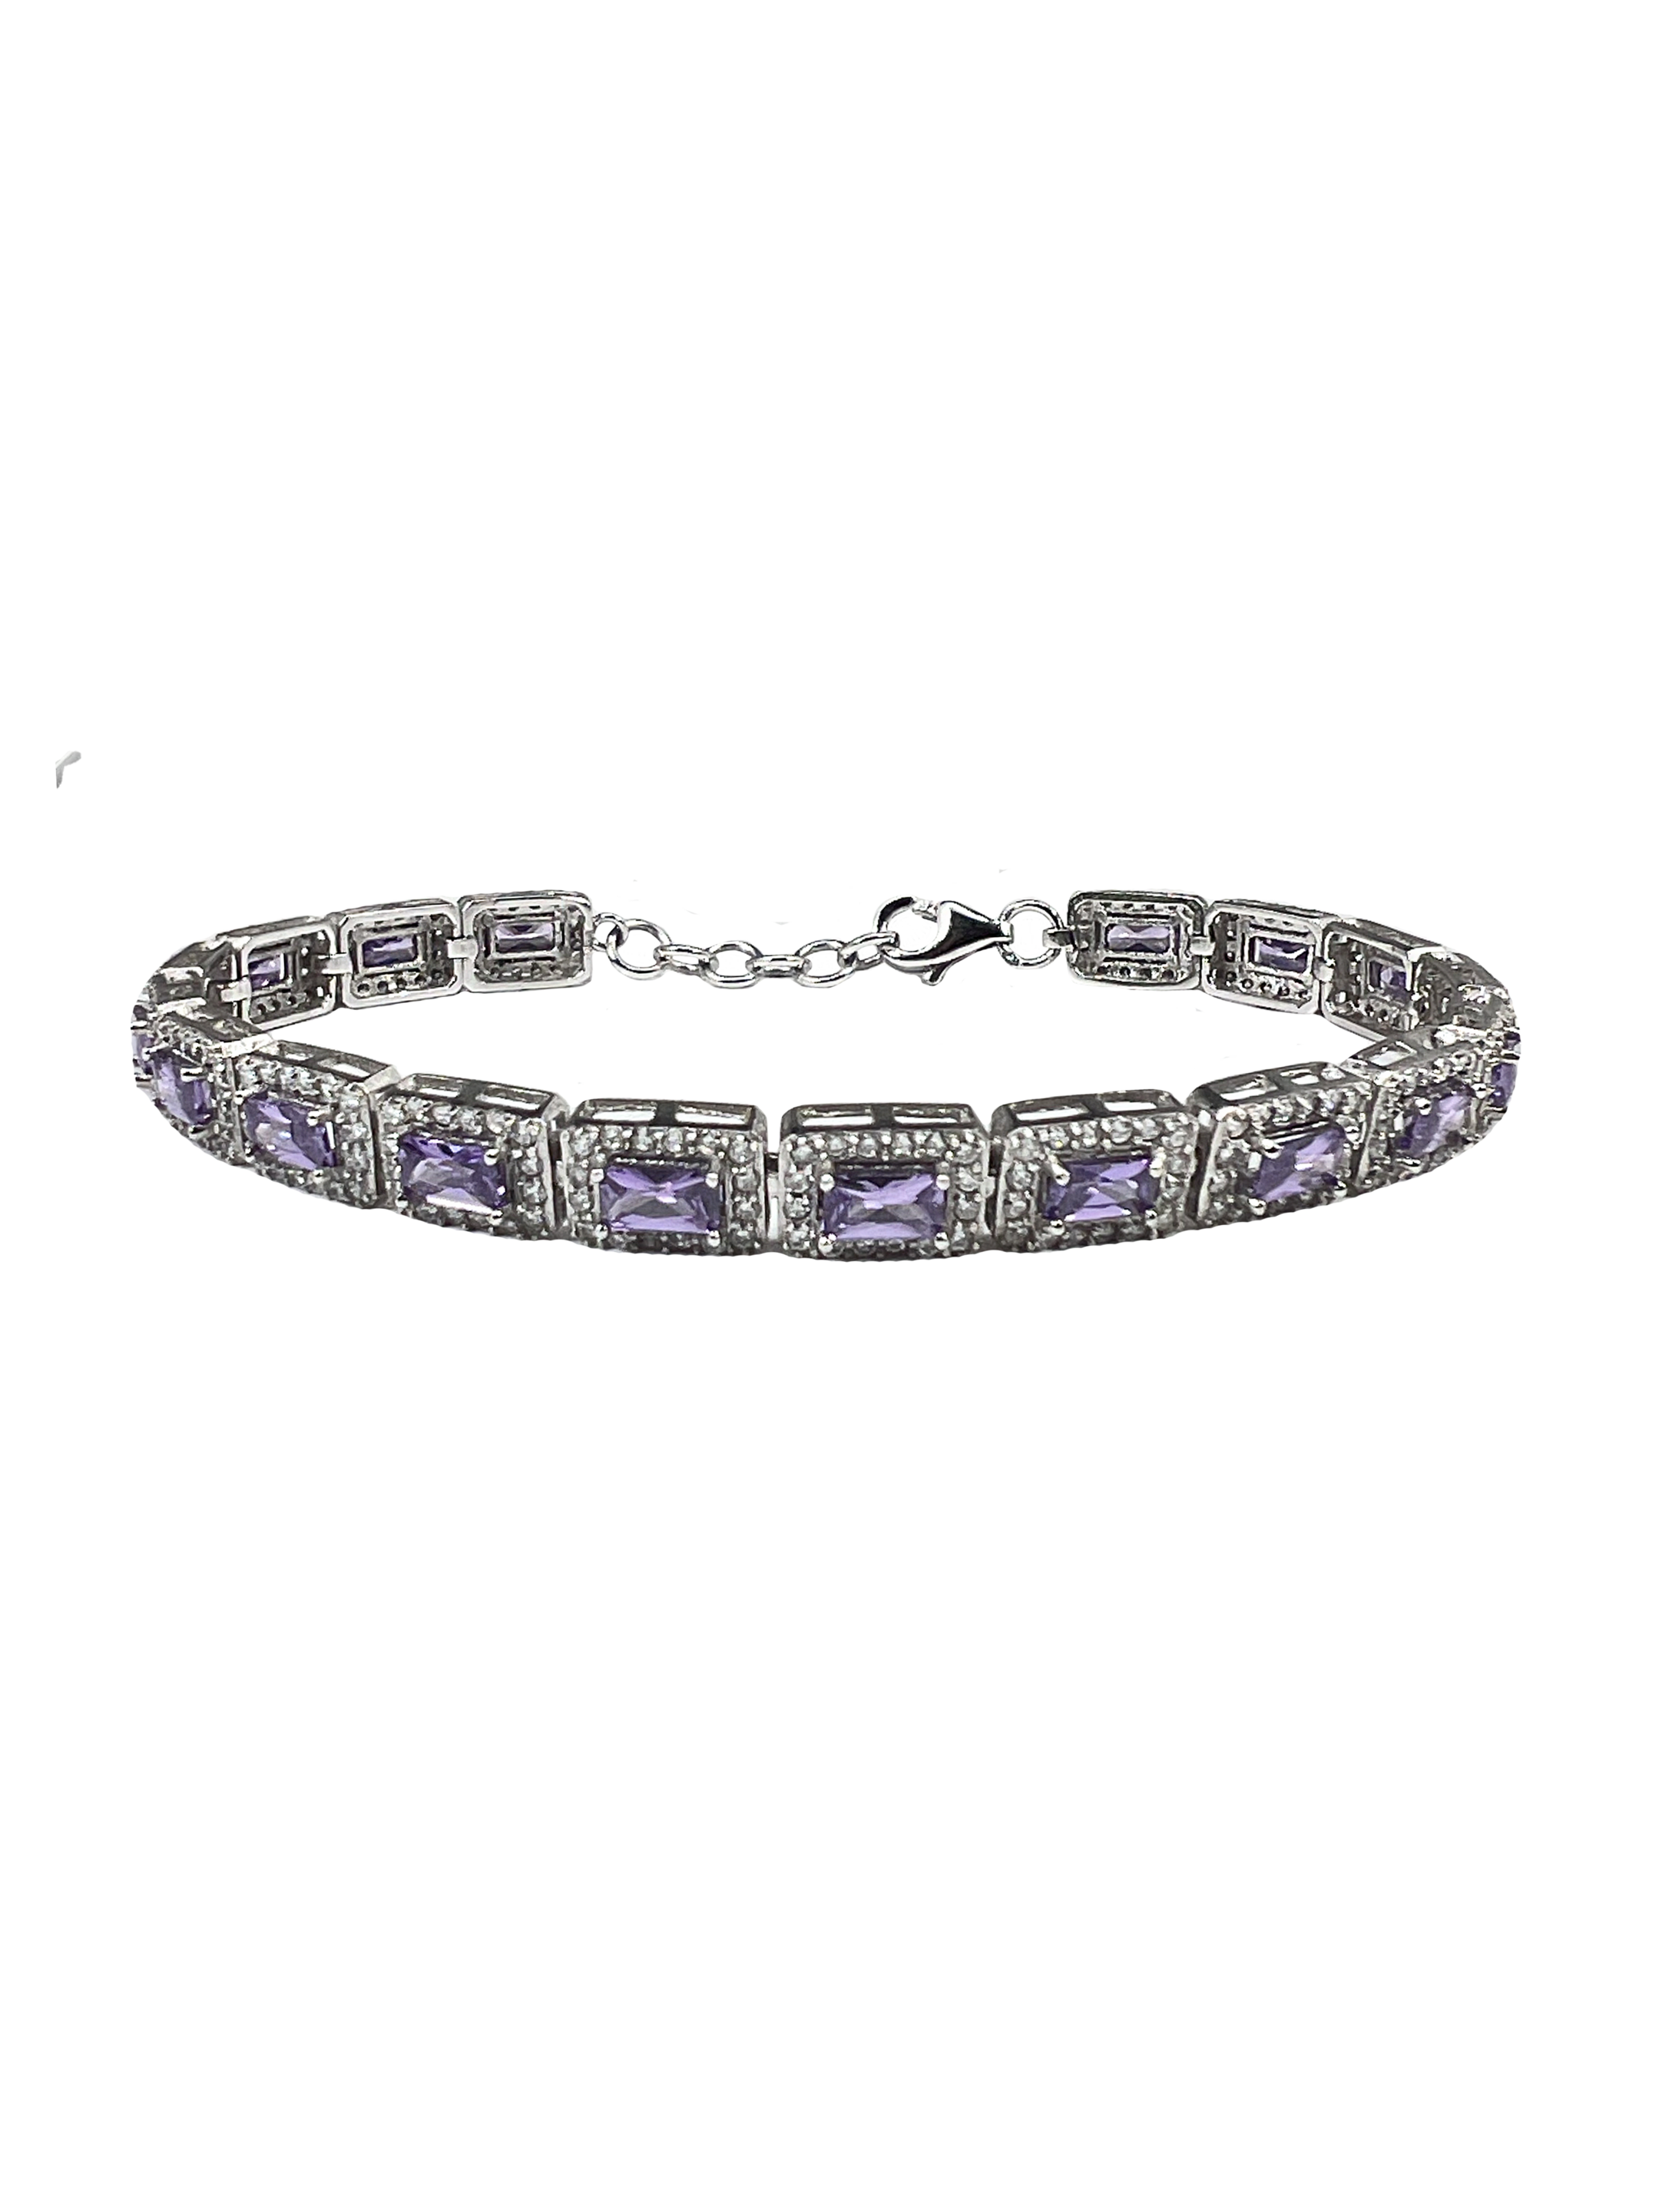 Bracelet en argent avec cristaux violets